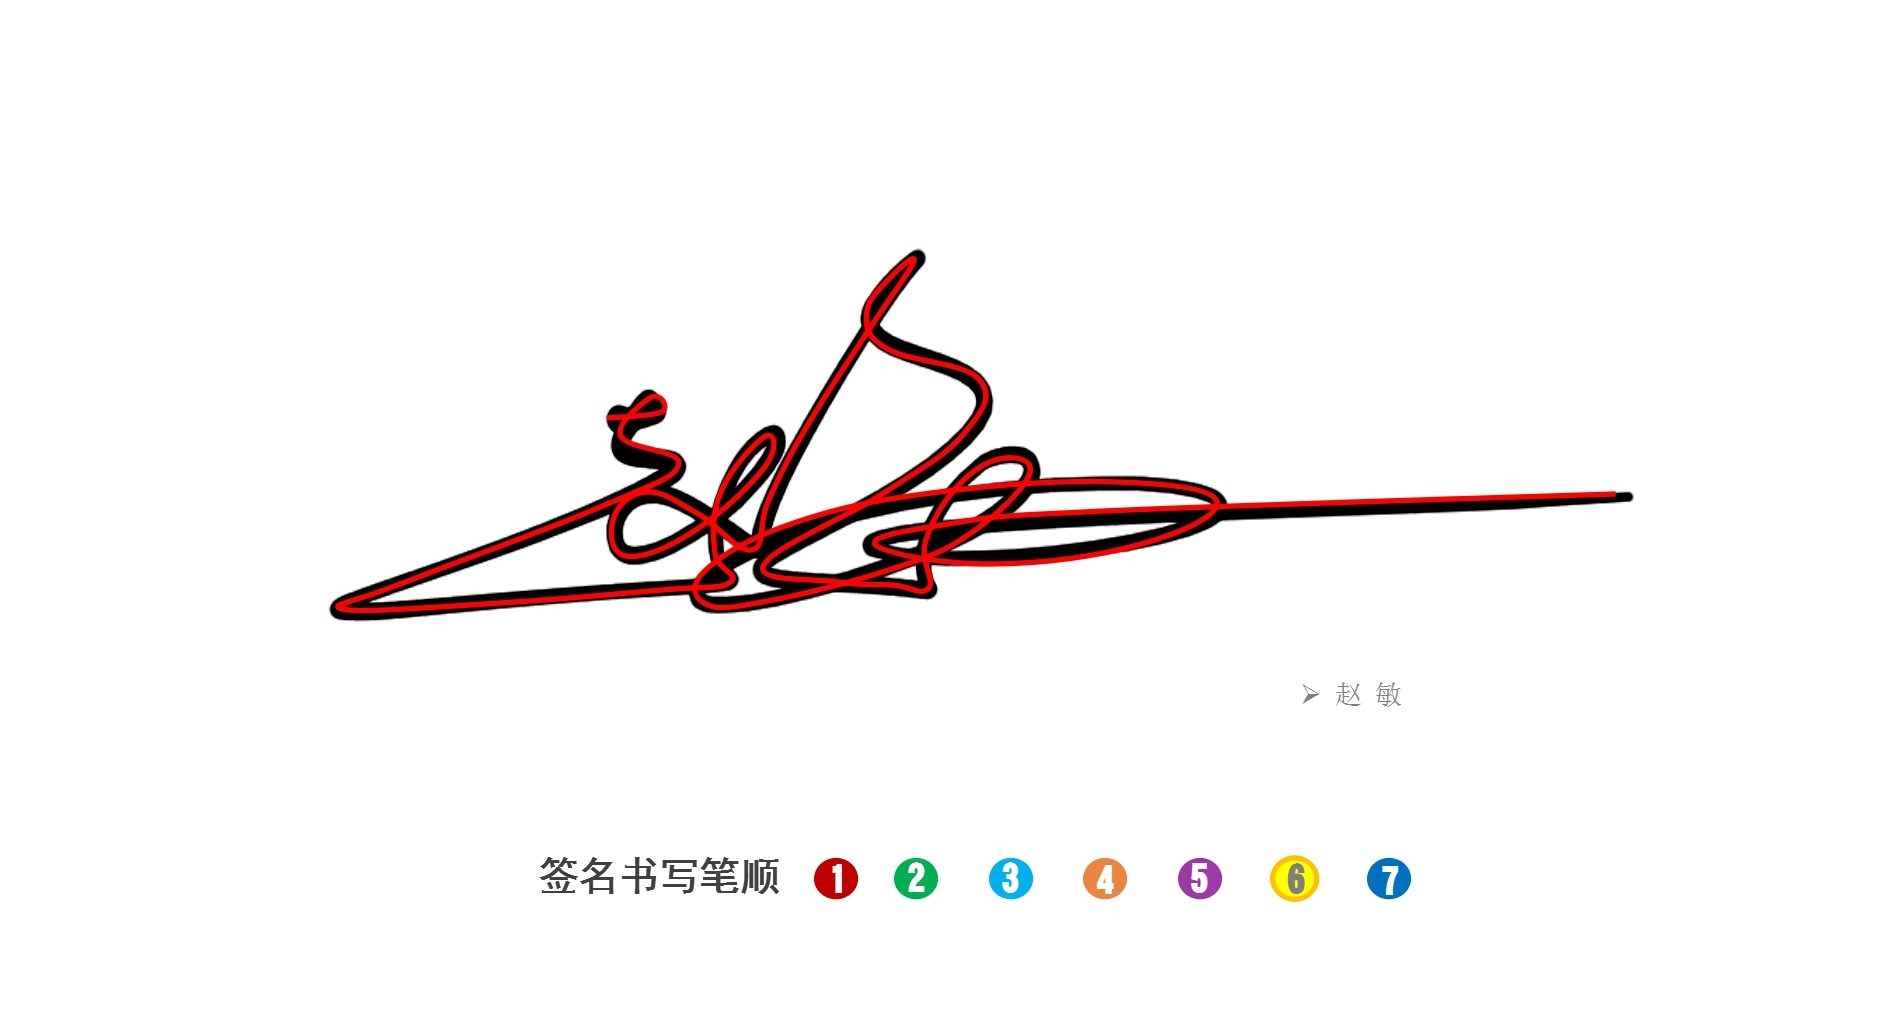 我的签名怎么写?丨签名设计笔顺演示丨南京孙老师